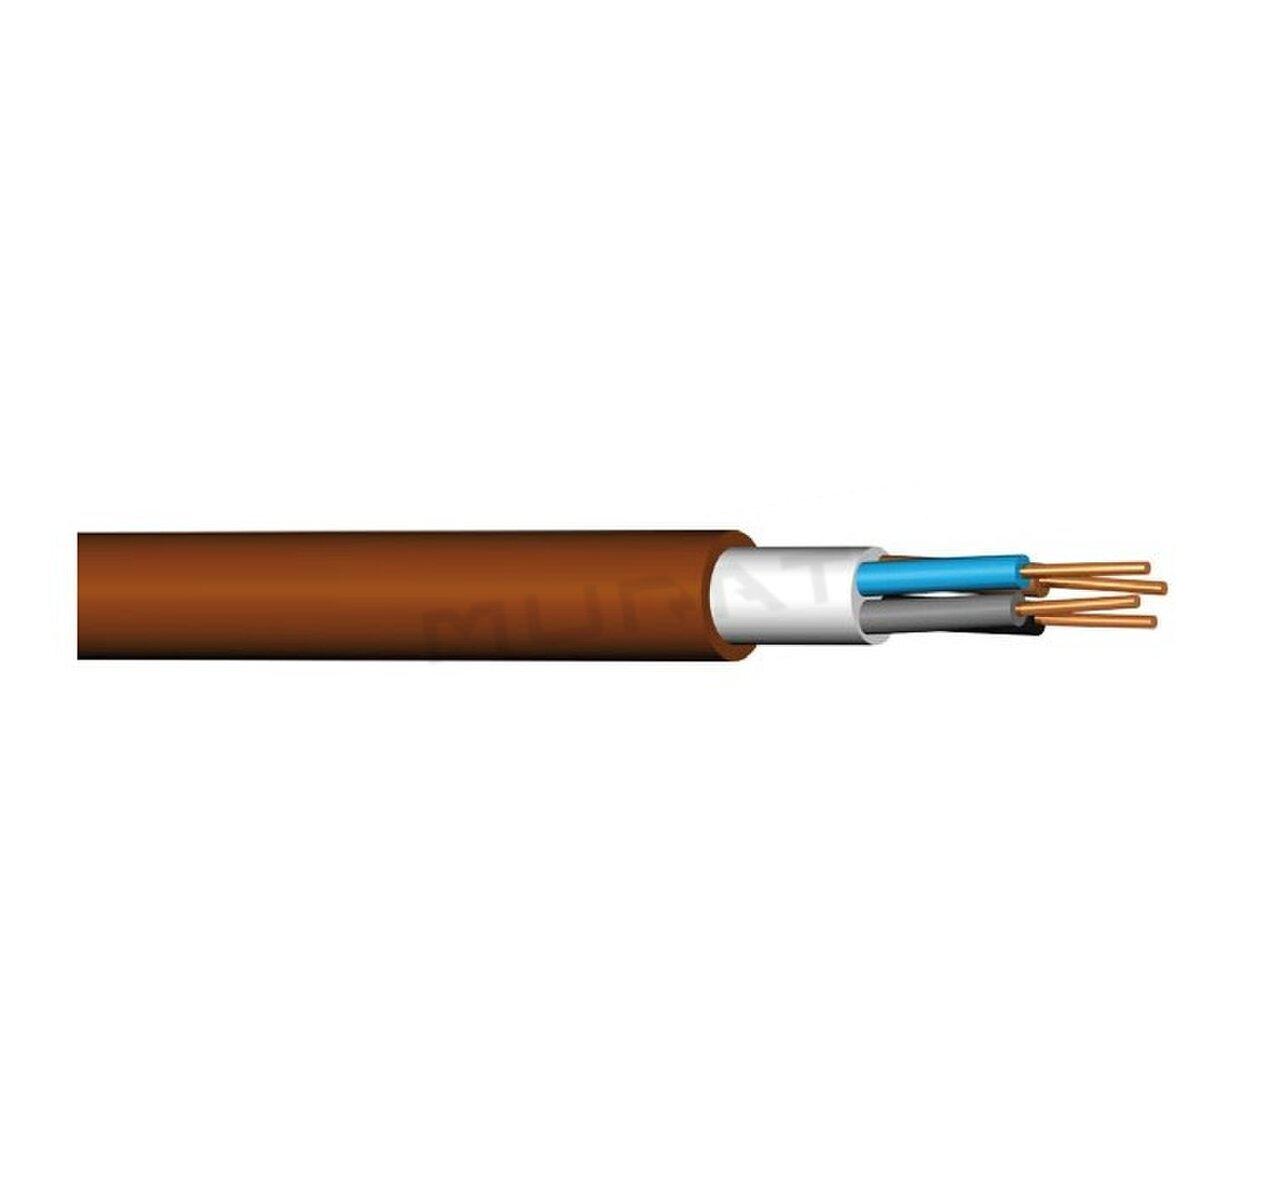 Kábel PRAFlaDur-J 5x16 mm2 RE PH120-R, PS15-PS60, B2cas1d1a1 silový